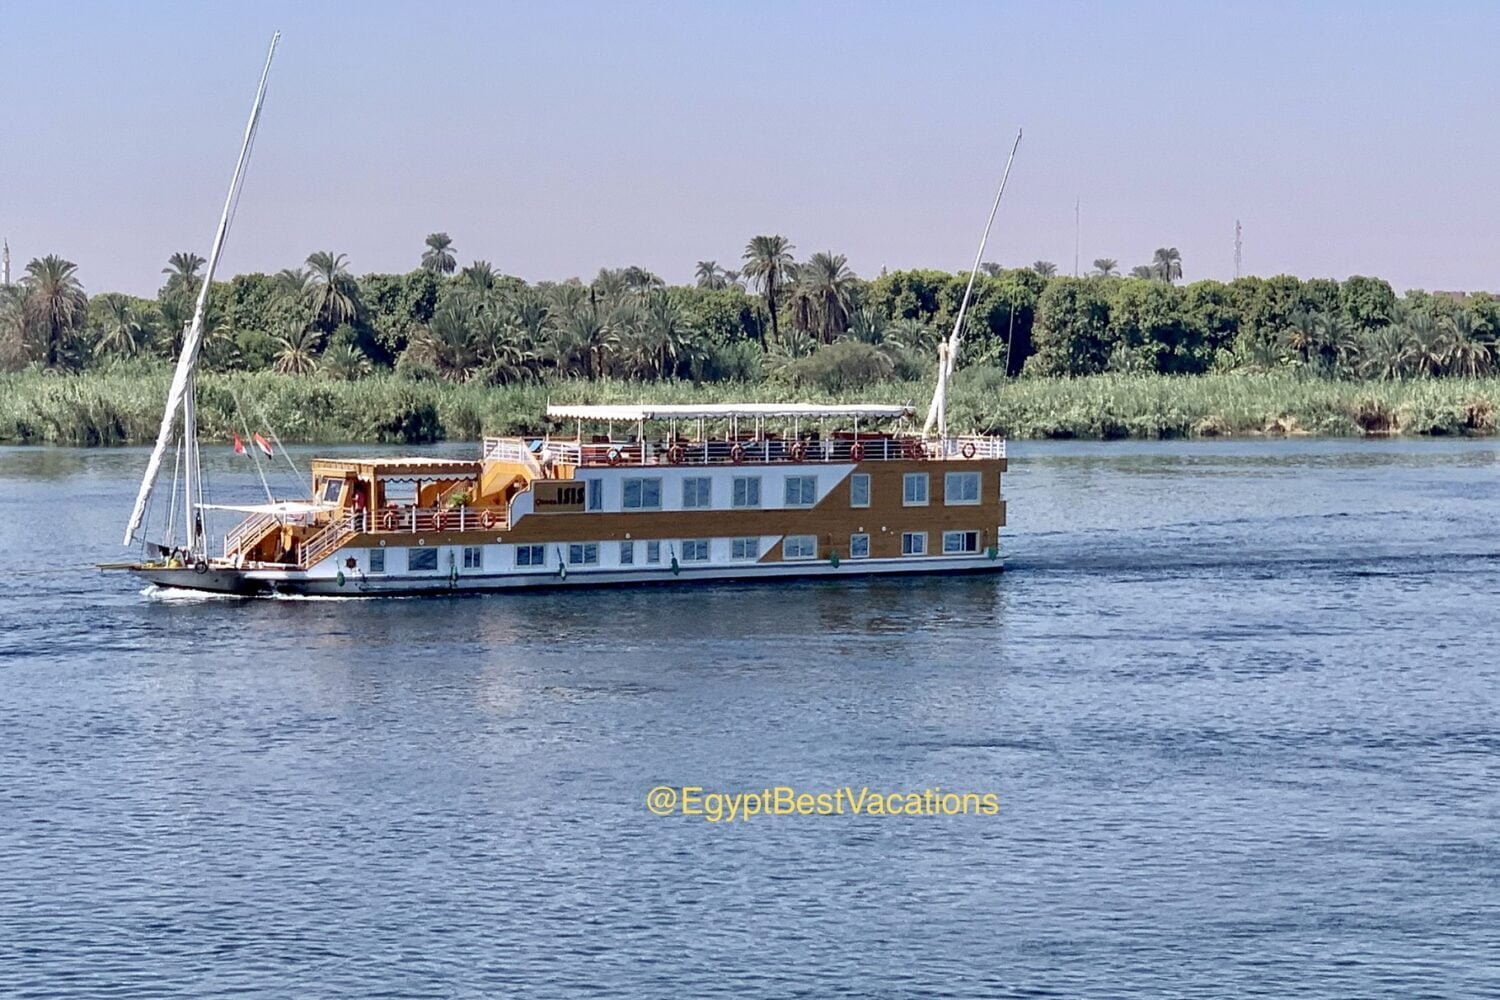 6-Day Cairo & Dahabiya Nile Cruise Tour From Netherlands